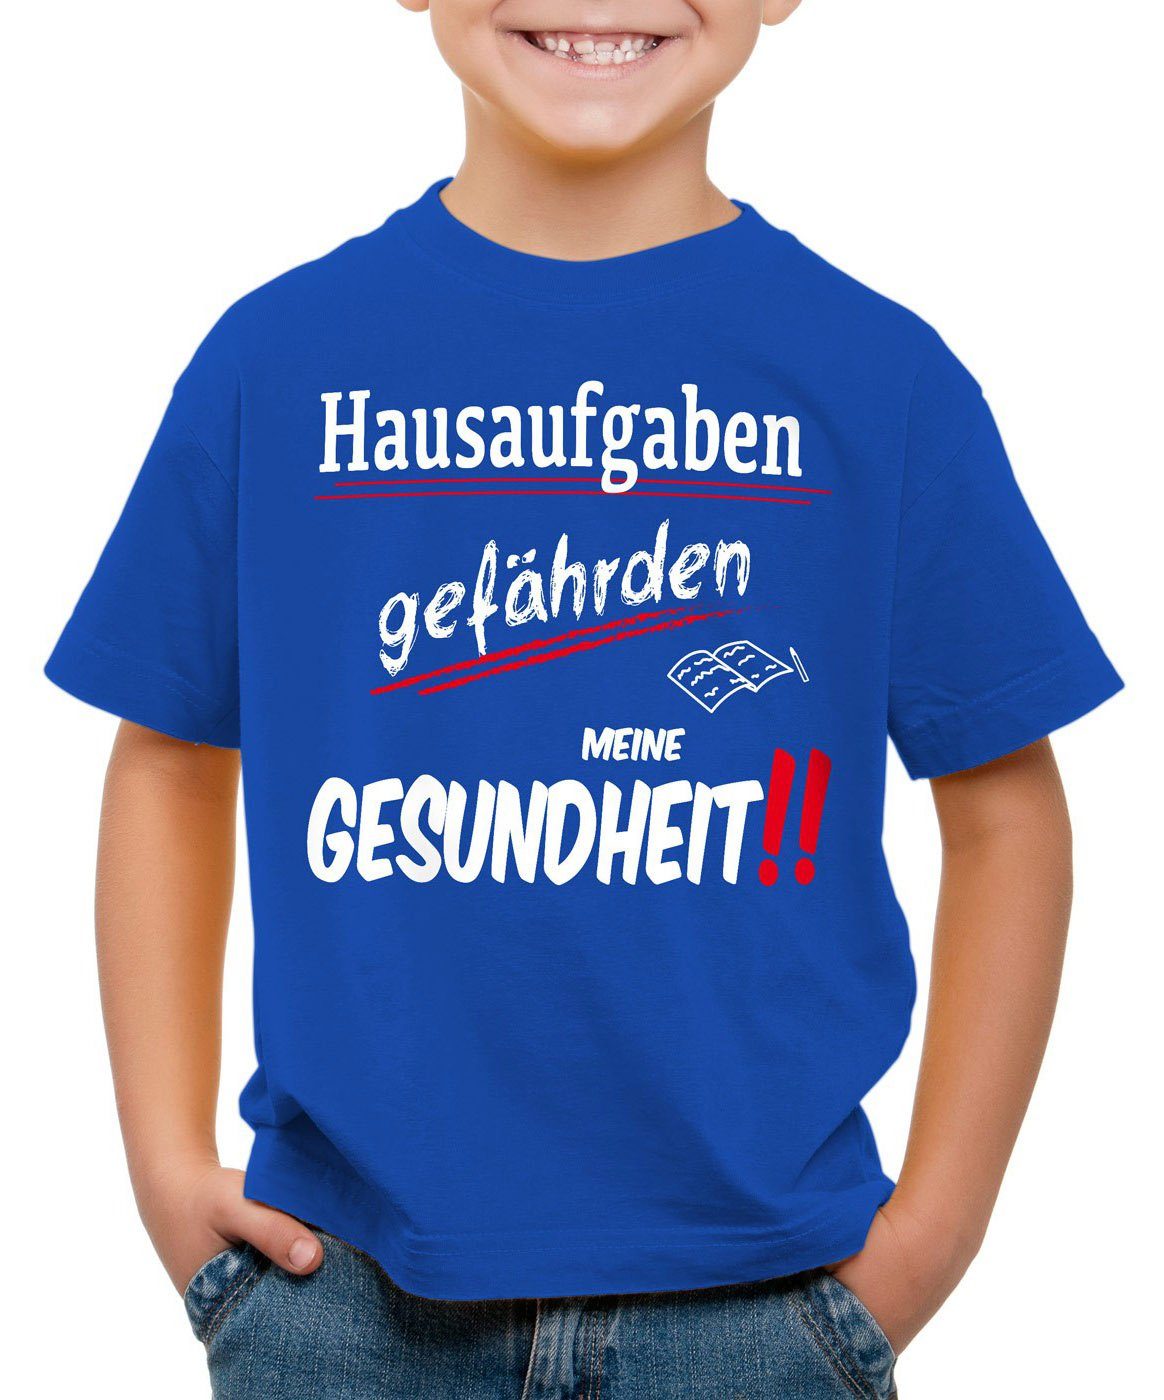 style3 Print-Shirt Kinder T-Shirt Hausaufgaben gefährden Gesundheit Sprüche  Fun schule schüler uni